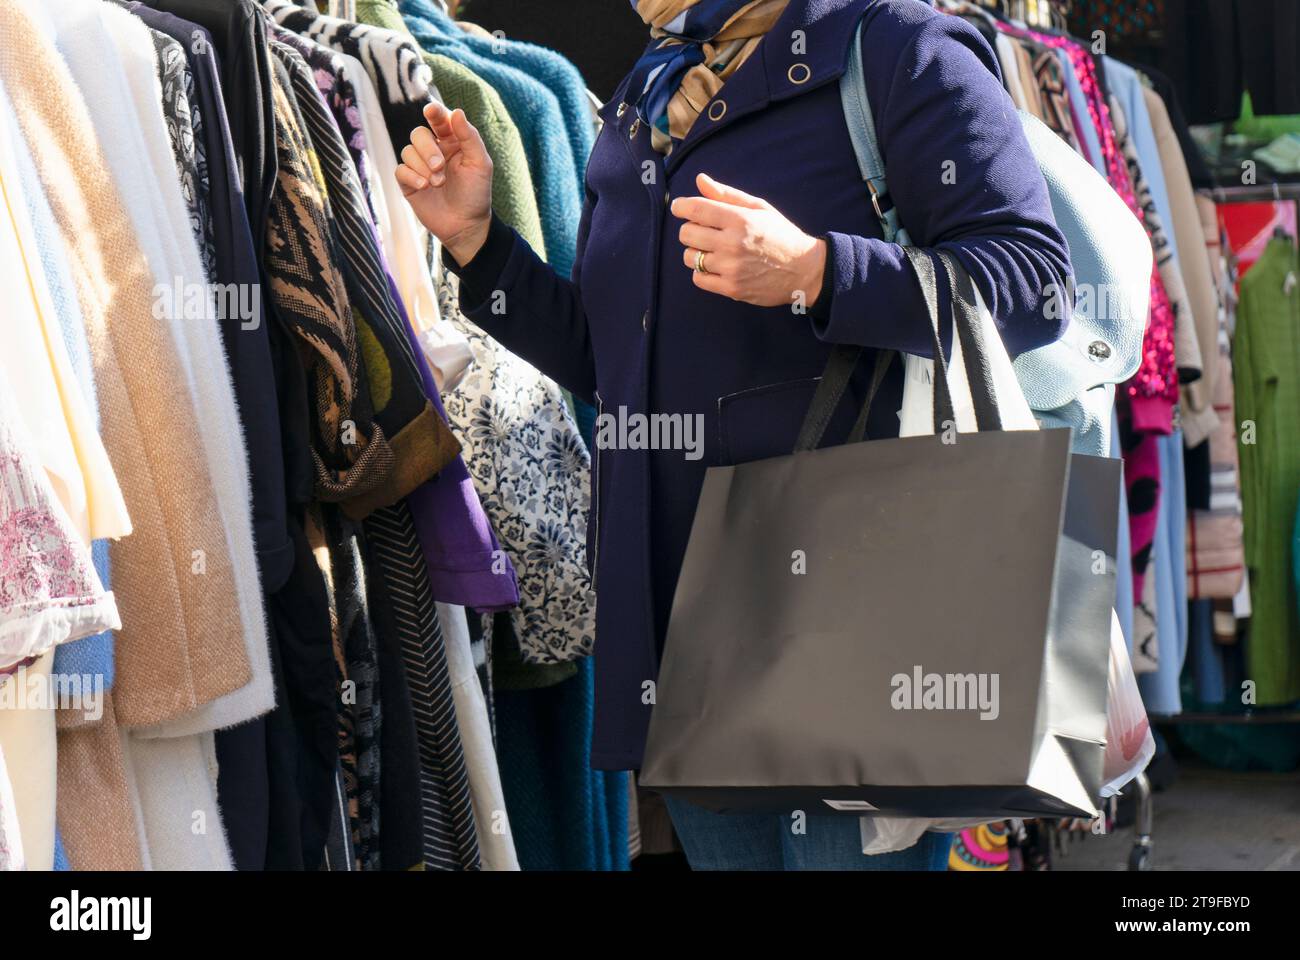 Una donna che fa shopping in un mercato all'aperto, osserva i vestiti appesi su scaffali e grucce in una piazza della città Foto Stock